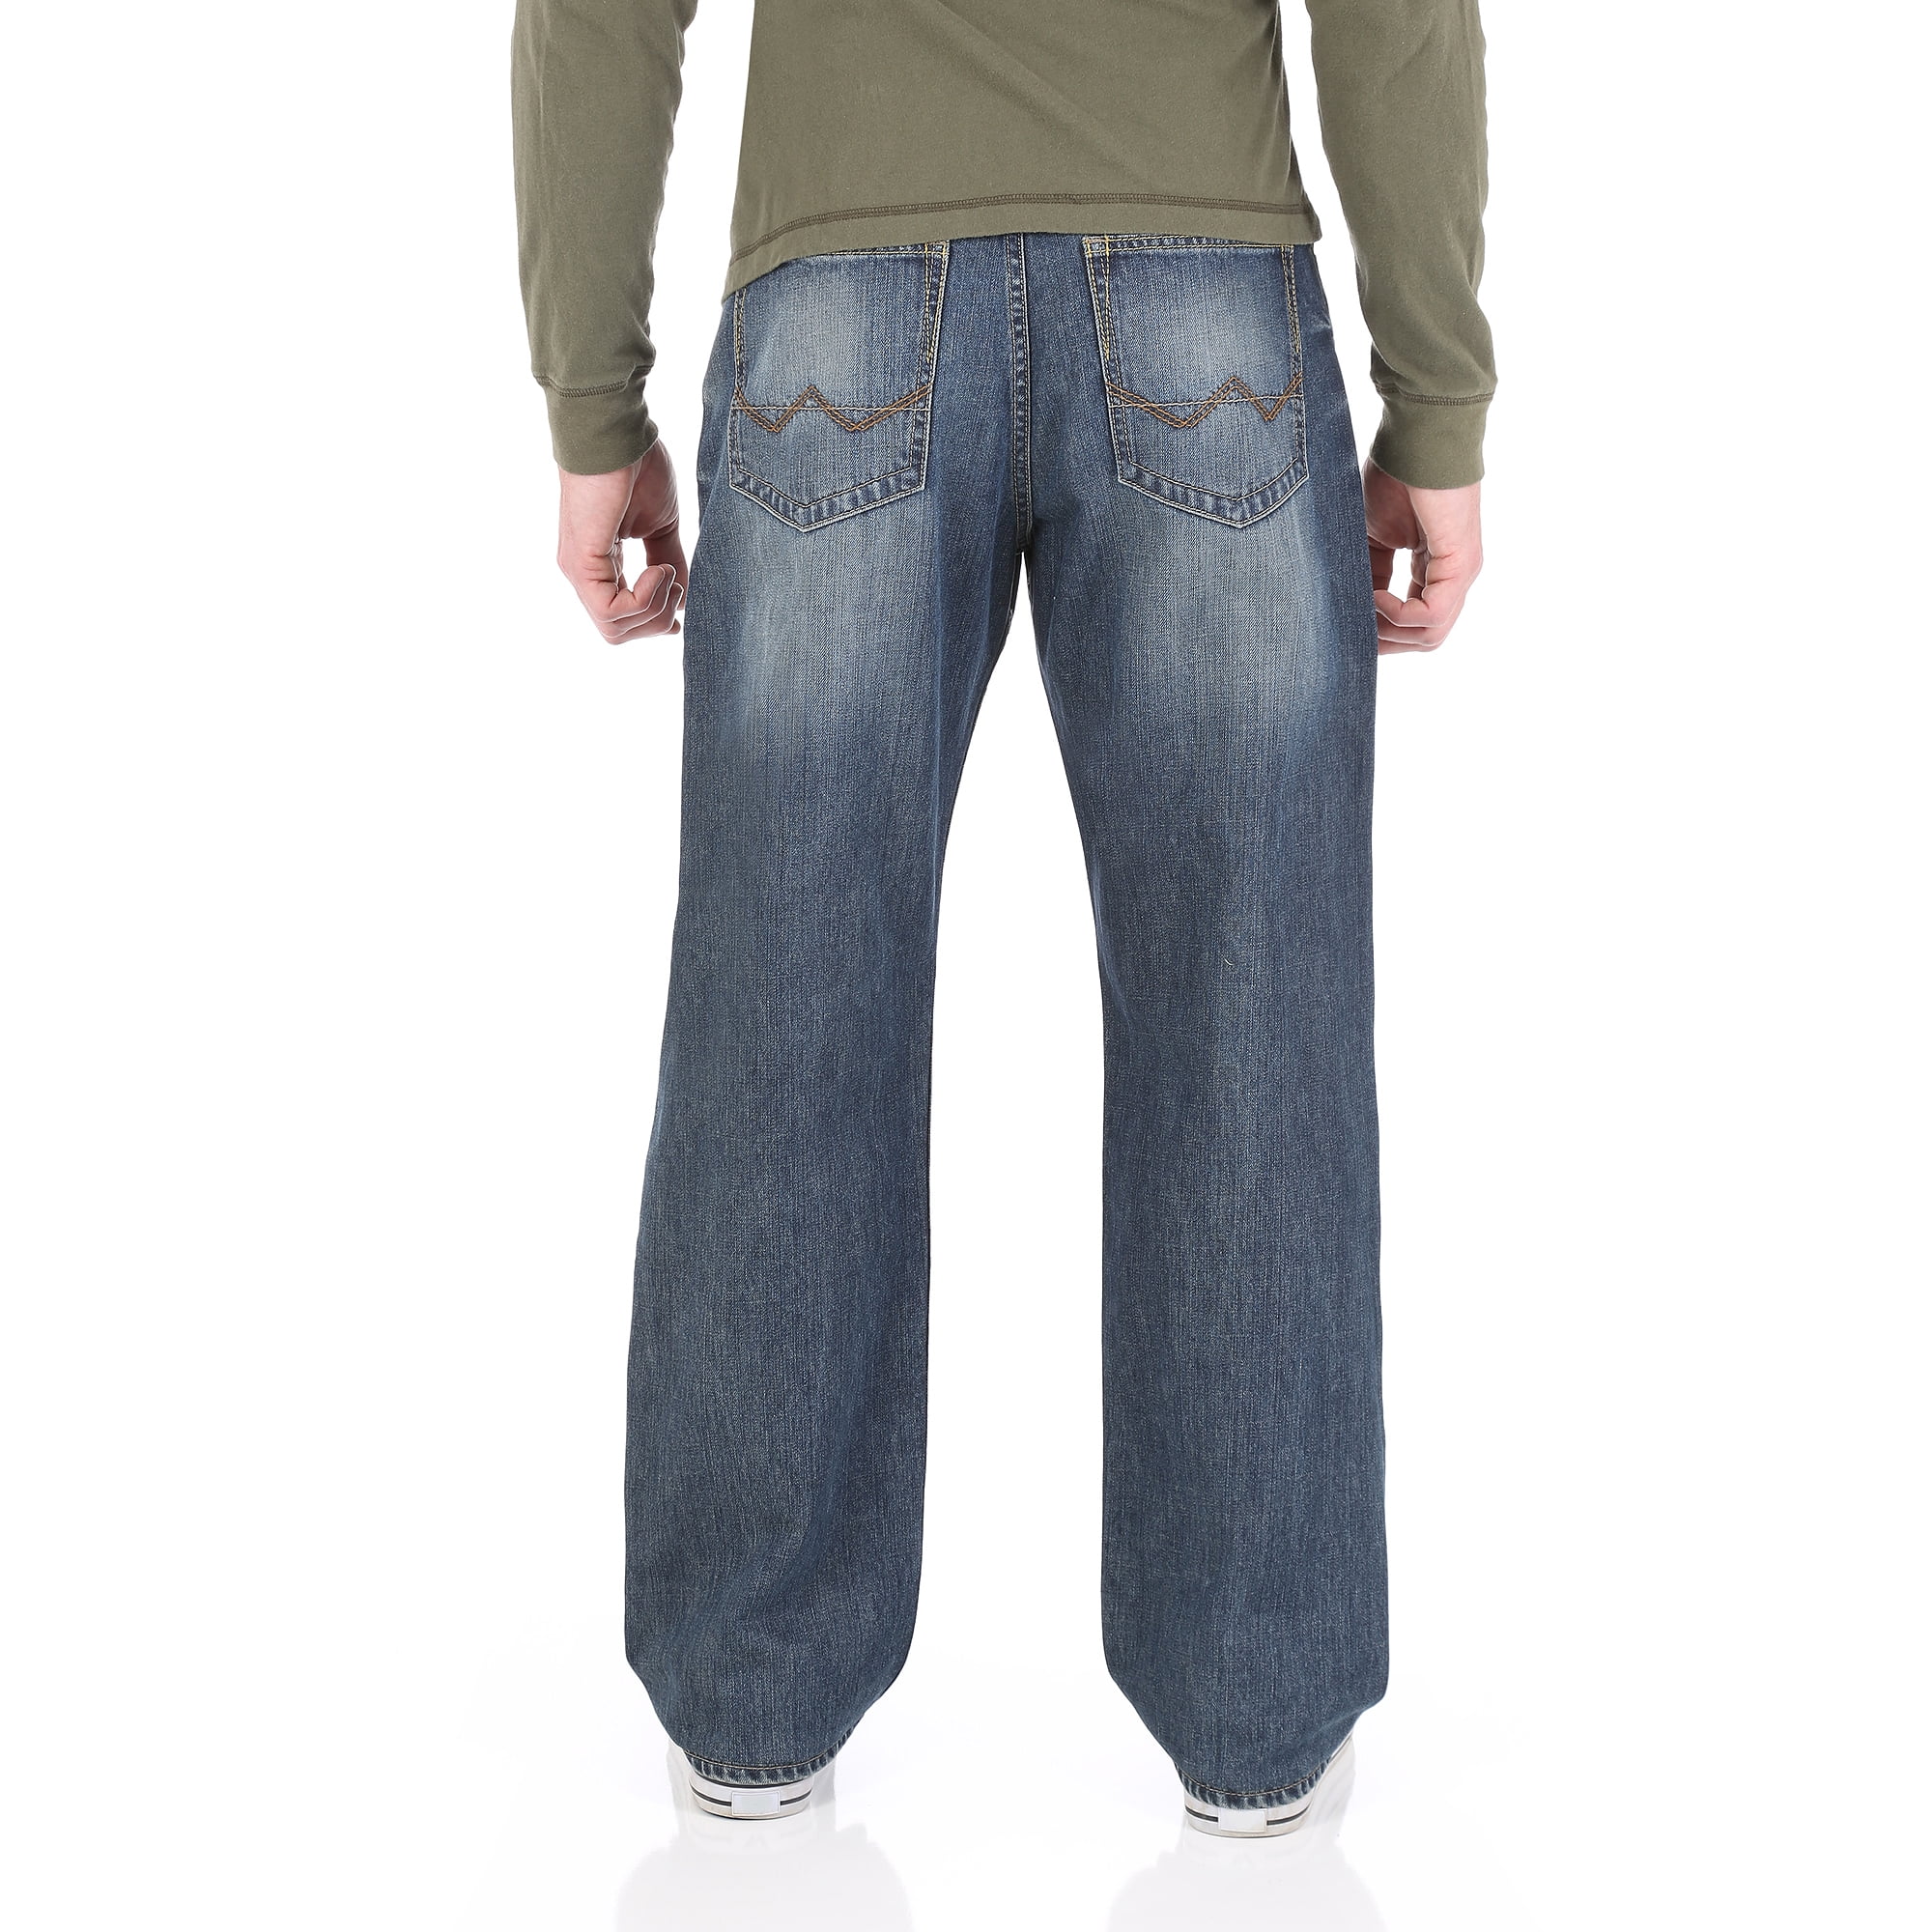 wrangler jeans co